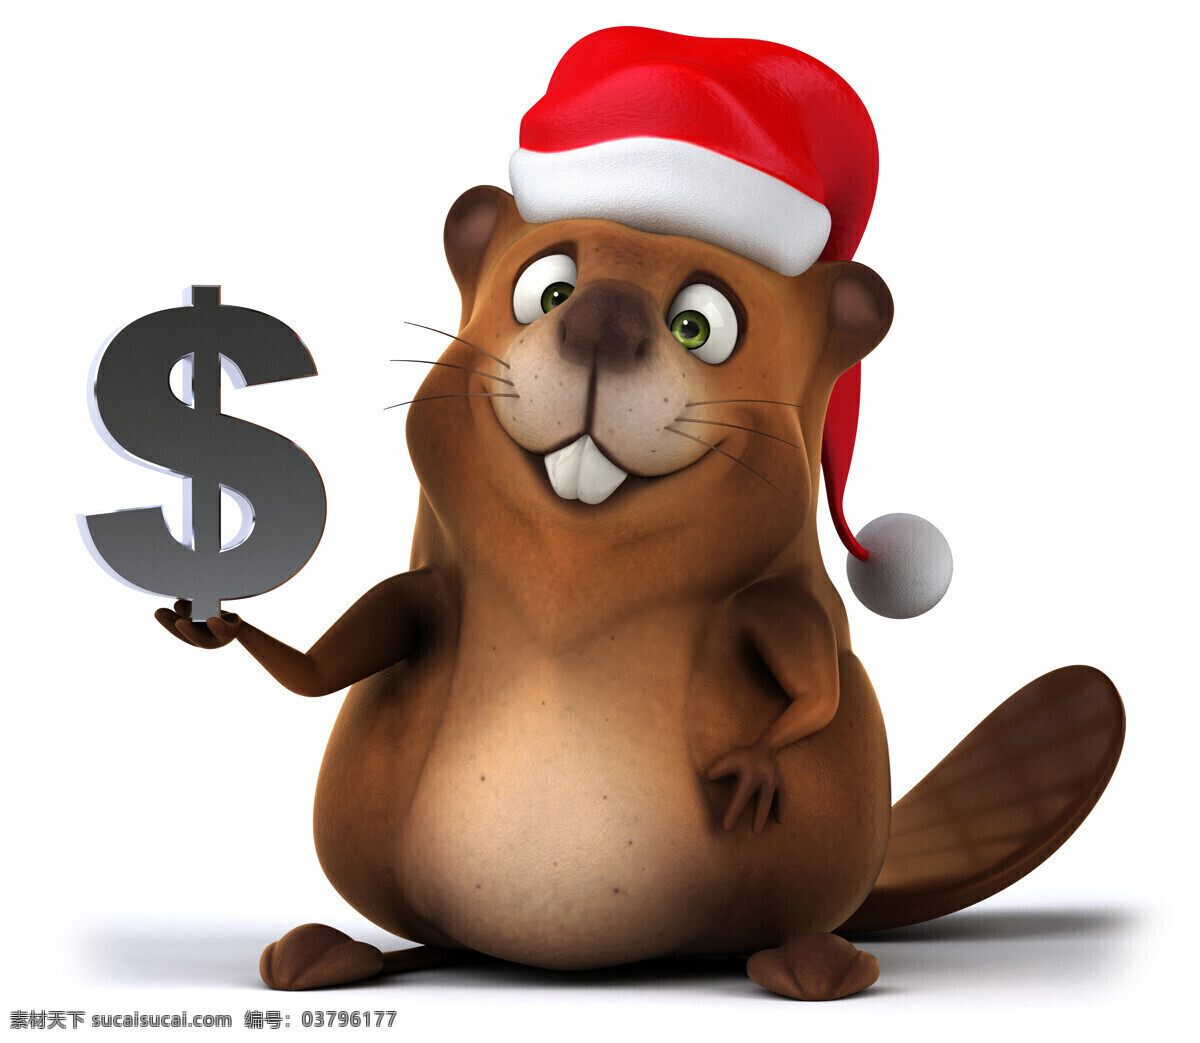 货币 符号 小 松鼠 圣诞动物 圣诞帽 圣诞节 卡通动物 小松鼠 货币符号 节日庆典 生活百科